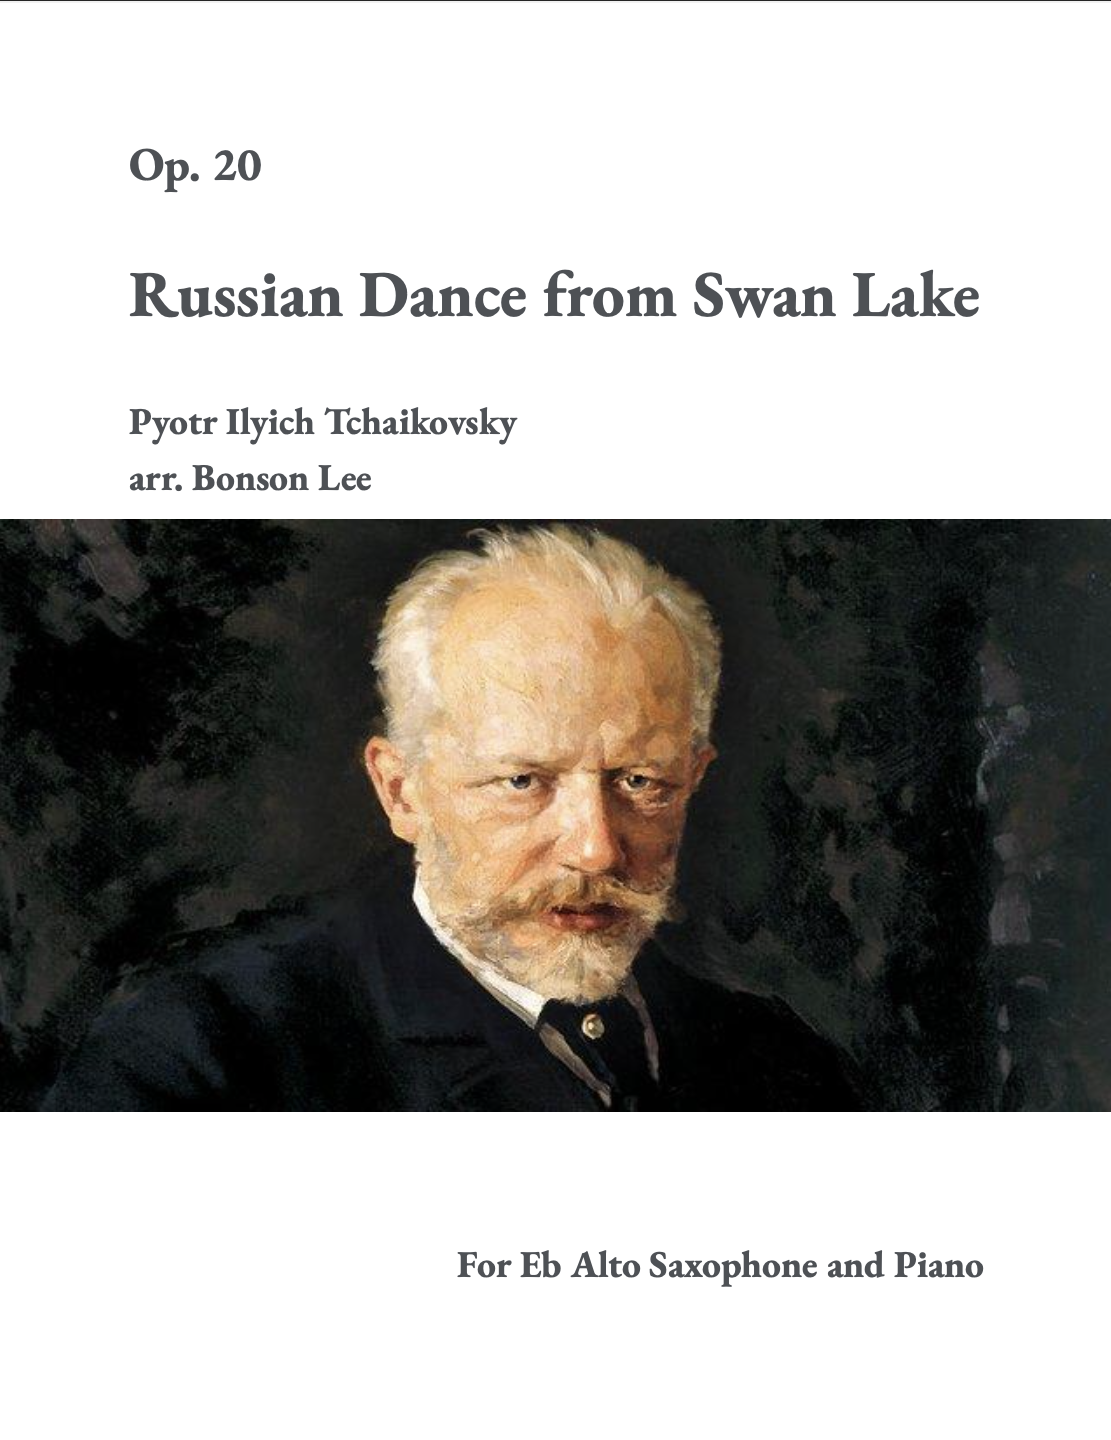 Russian Dance From Swan Lake, Op. 20 (Solo Saxophone Version) by Pyotr Ilyich Tchaikovsky, arr. Bonson Lee